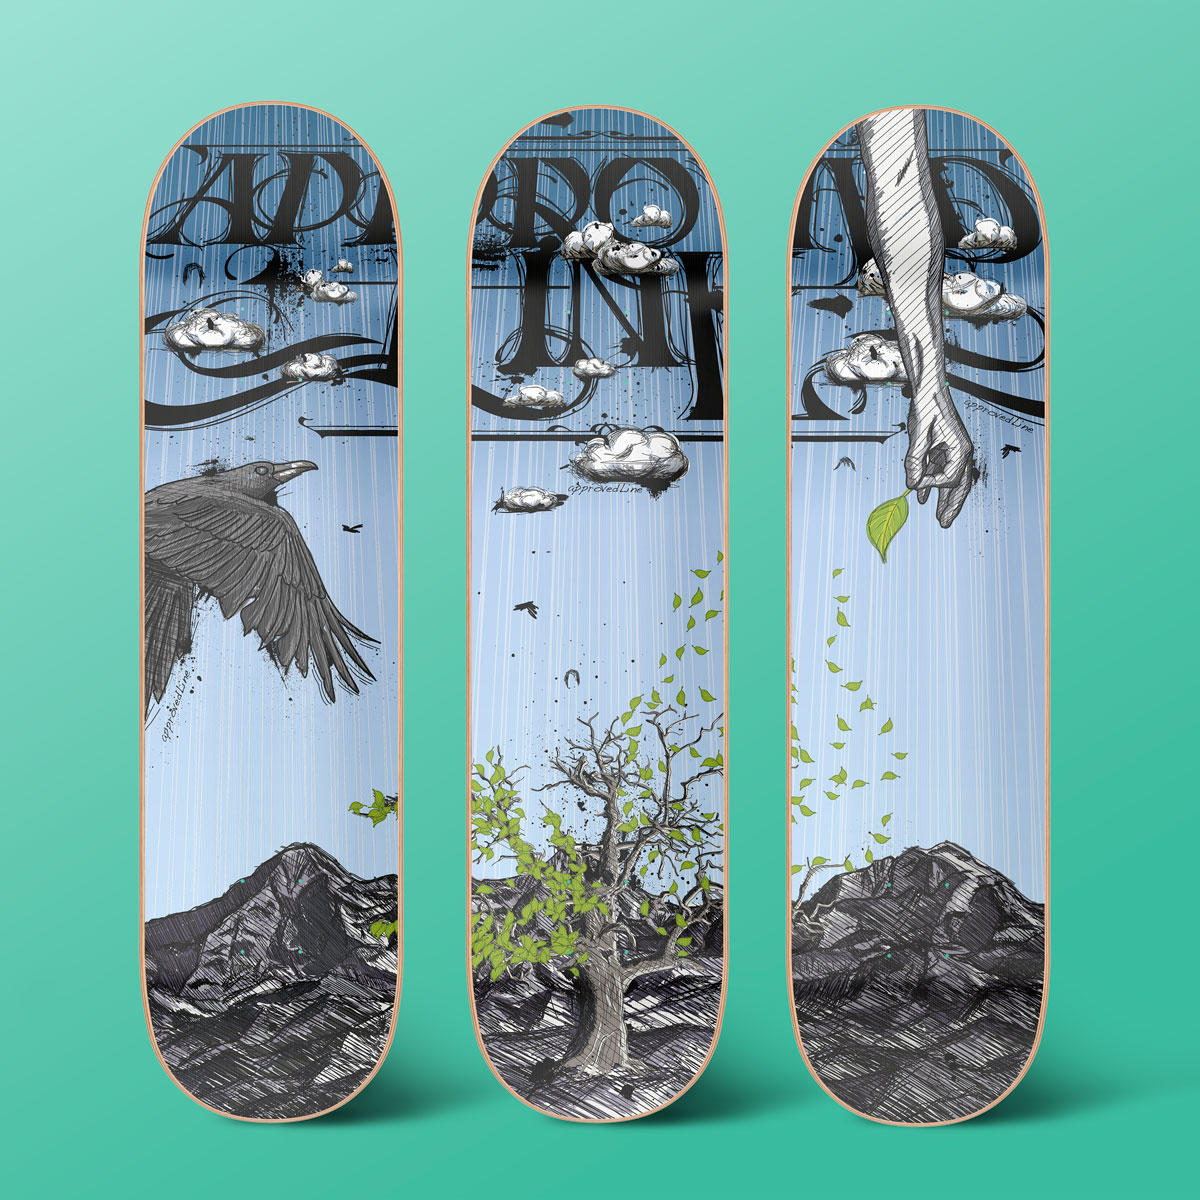 Simon_Baumann_Grafik_Logo_Illustration_Verpackung_Branding_Interlaken_Thun_Bern_Approved_Line_Skateboards